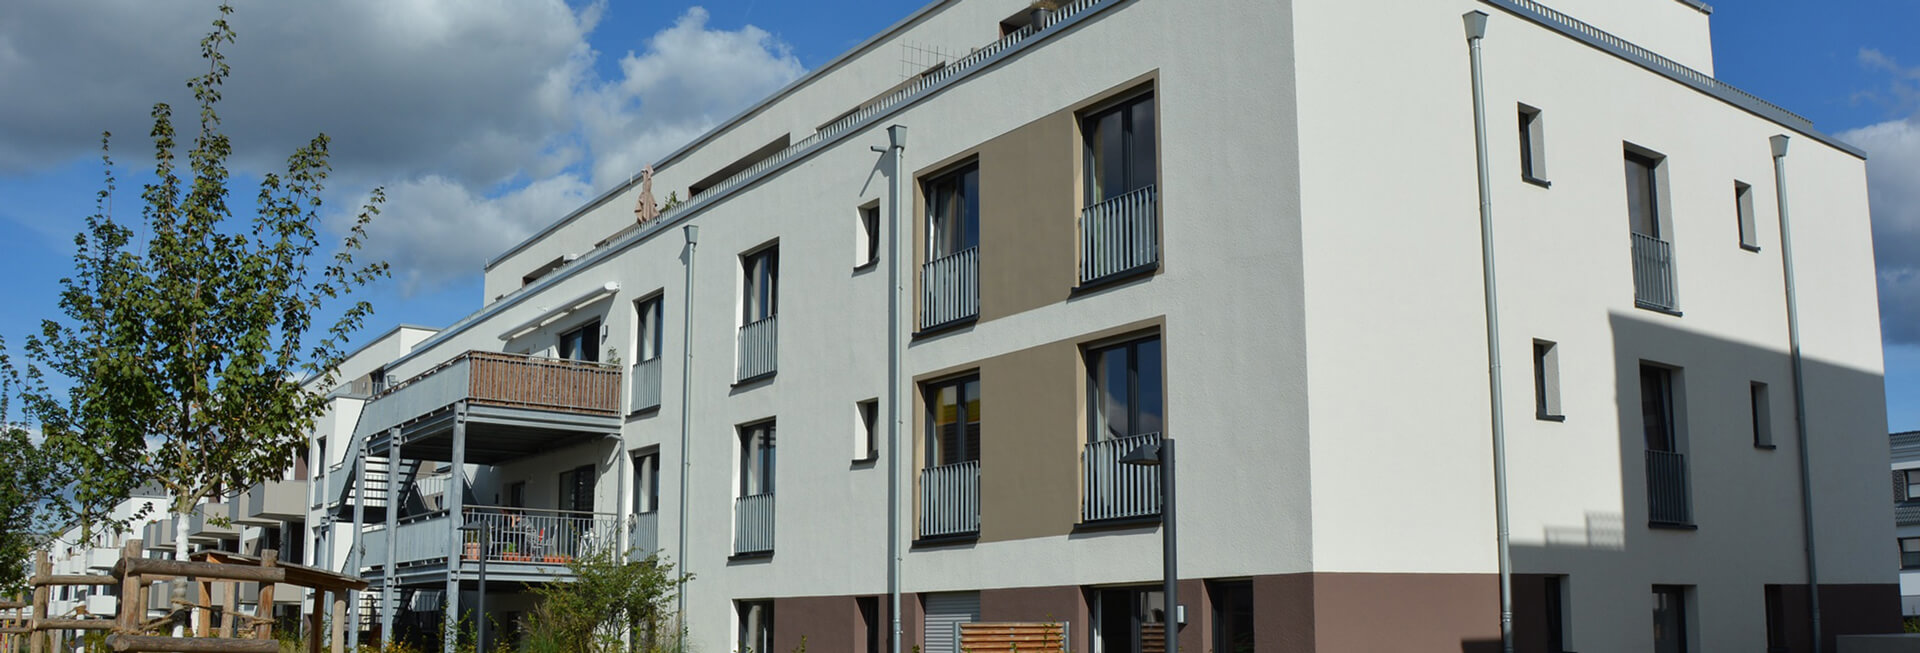 Blick von außen auf das inklusive Wohnhaus: Ein modernes, weiß gestrichenes Gebäude mit braunen Farbakzenten.